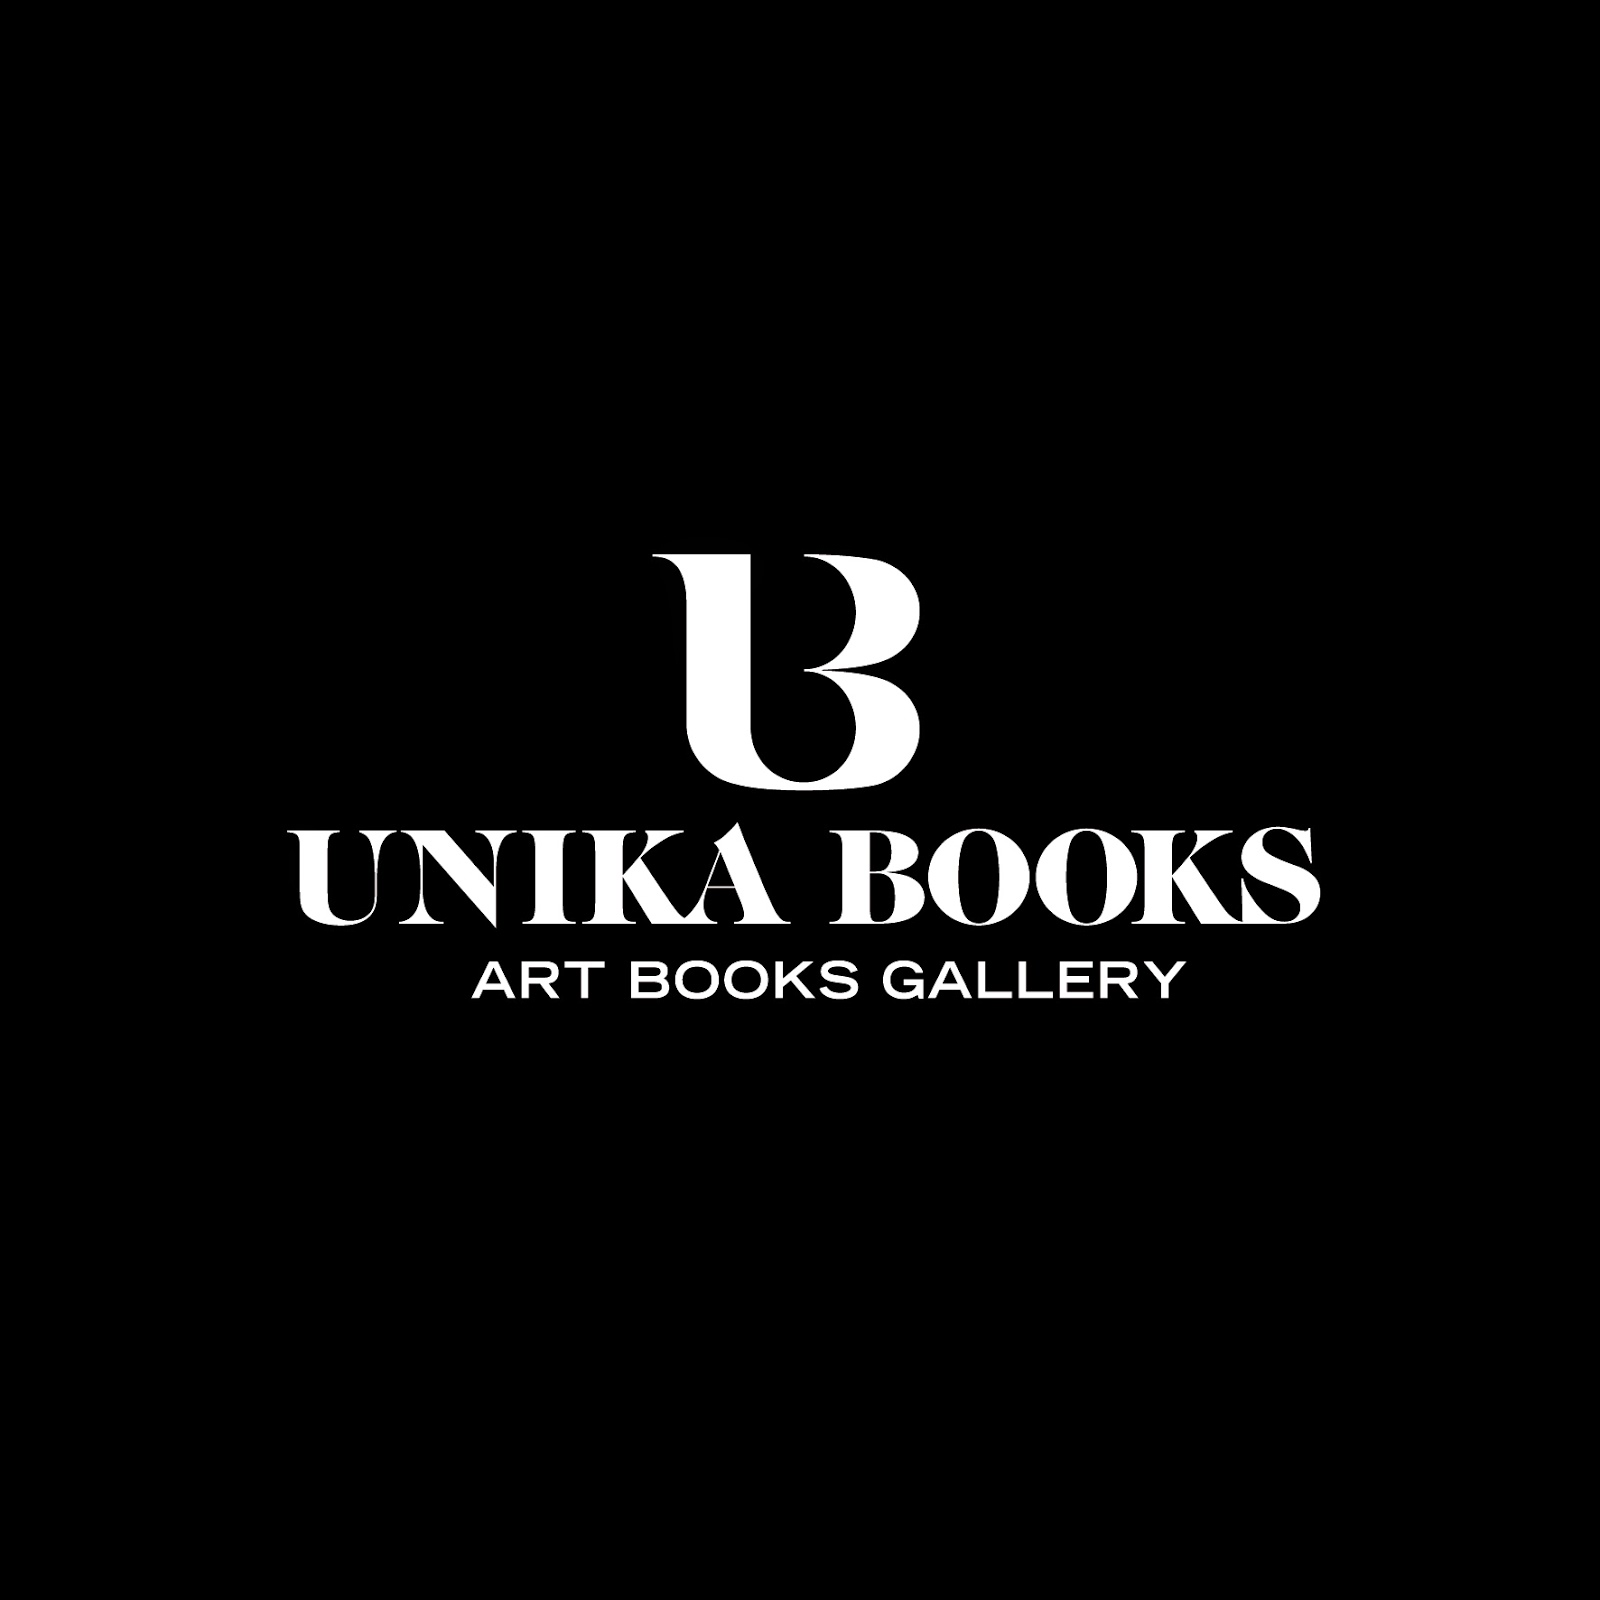 www.unikabooks.com